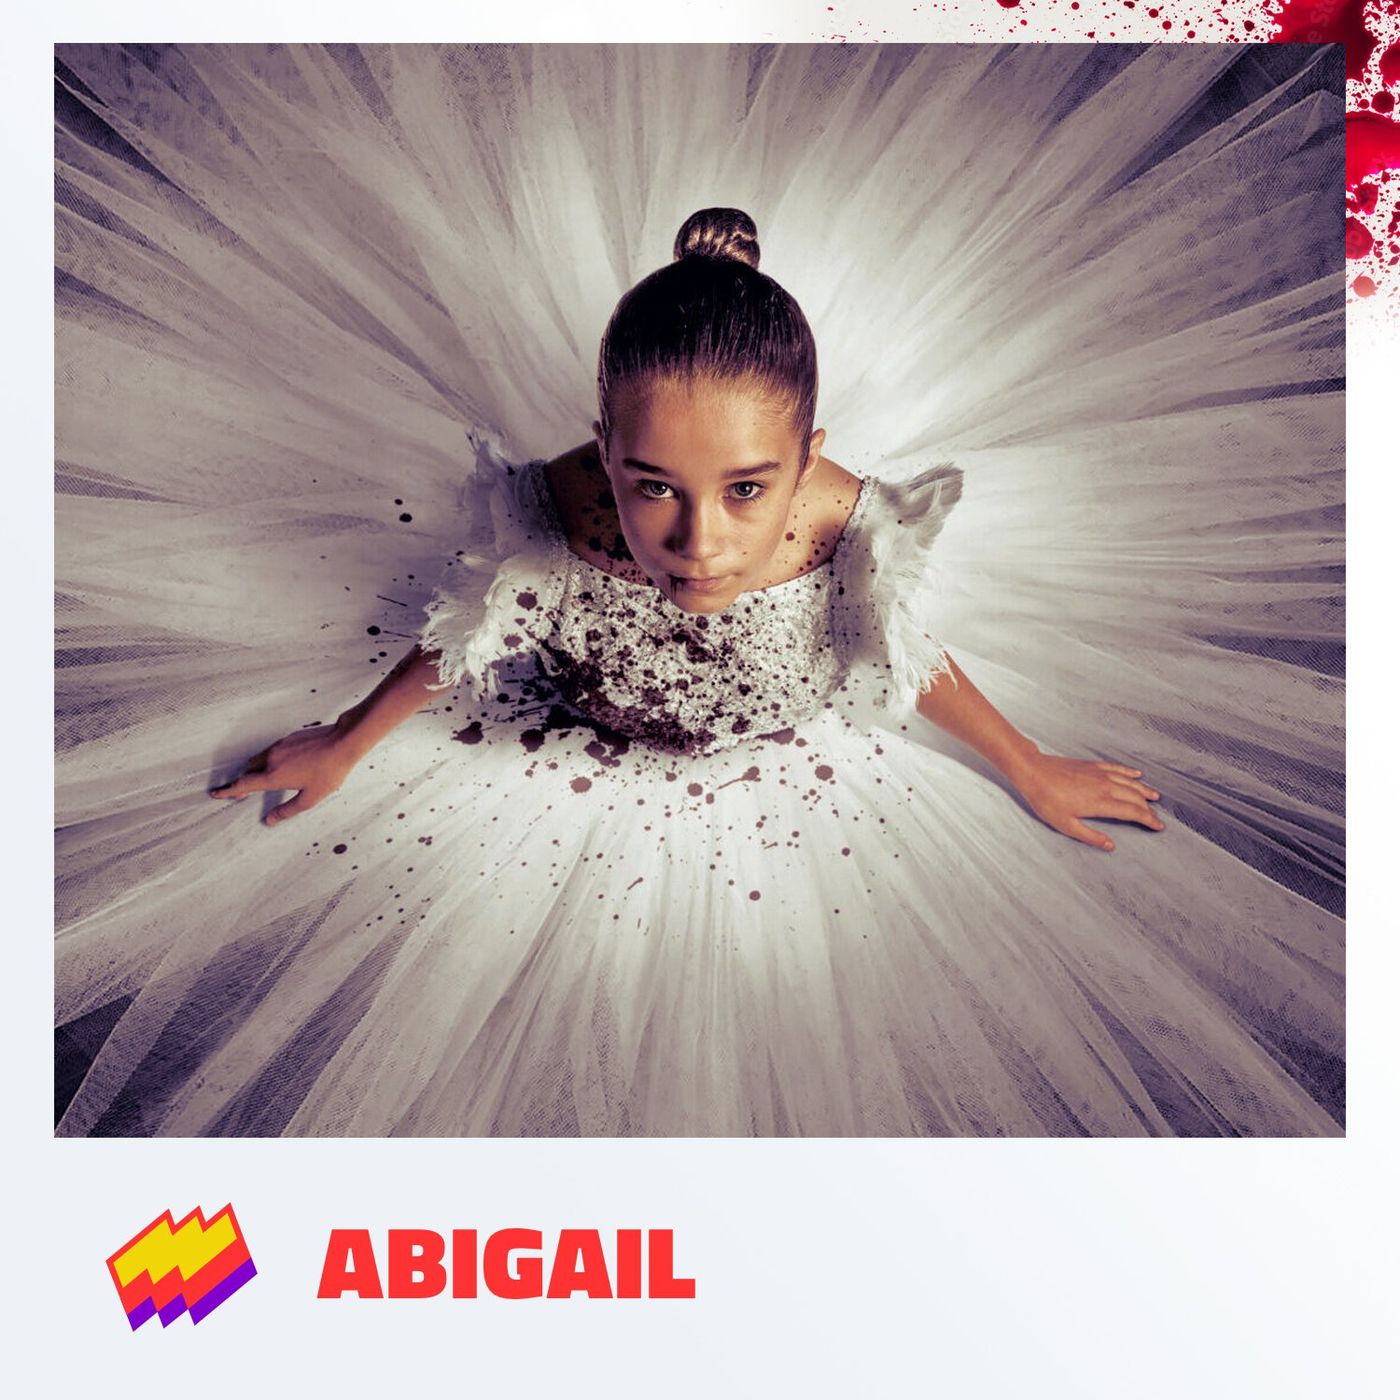 T14E14- Abigail: Piñataaas!